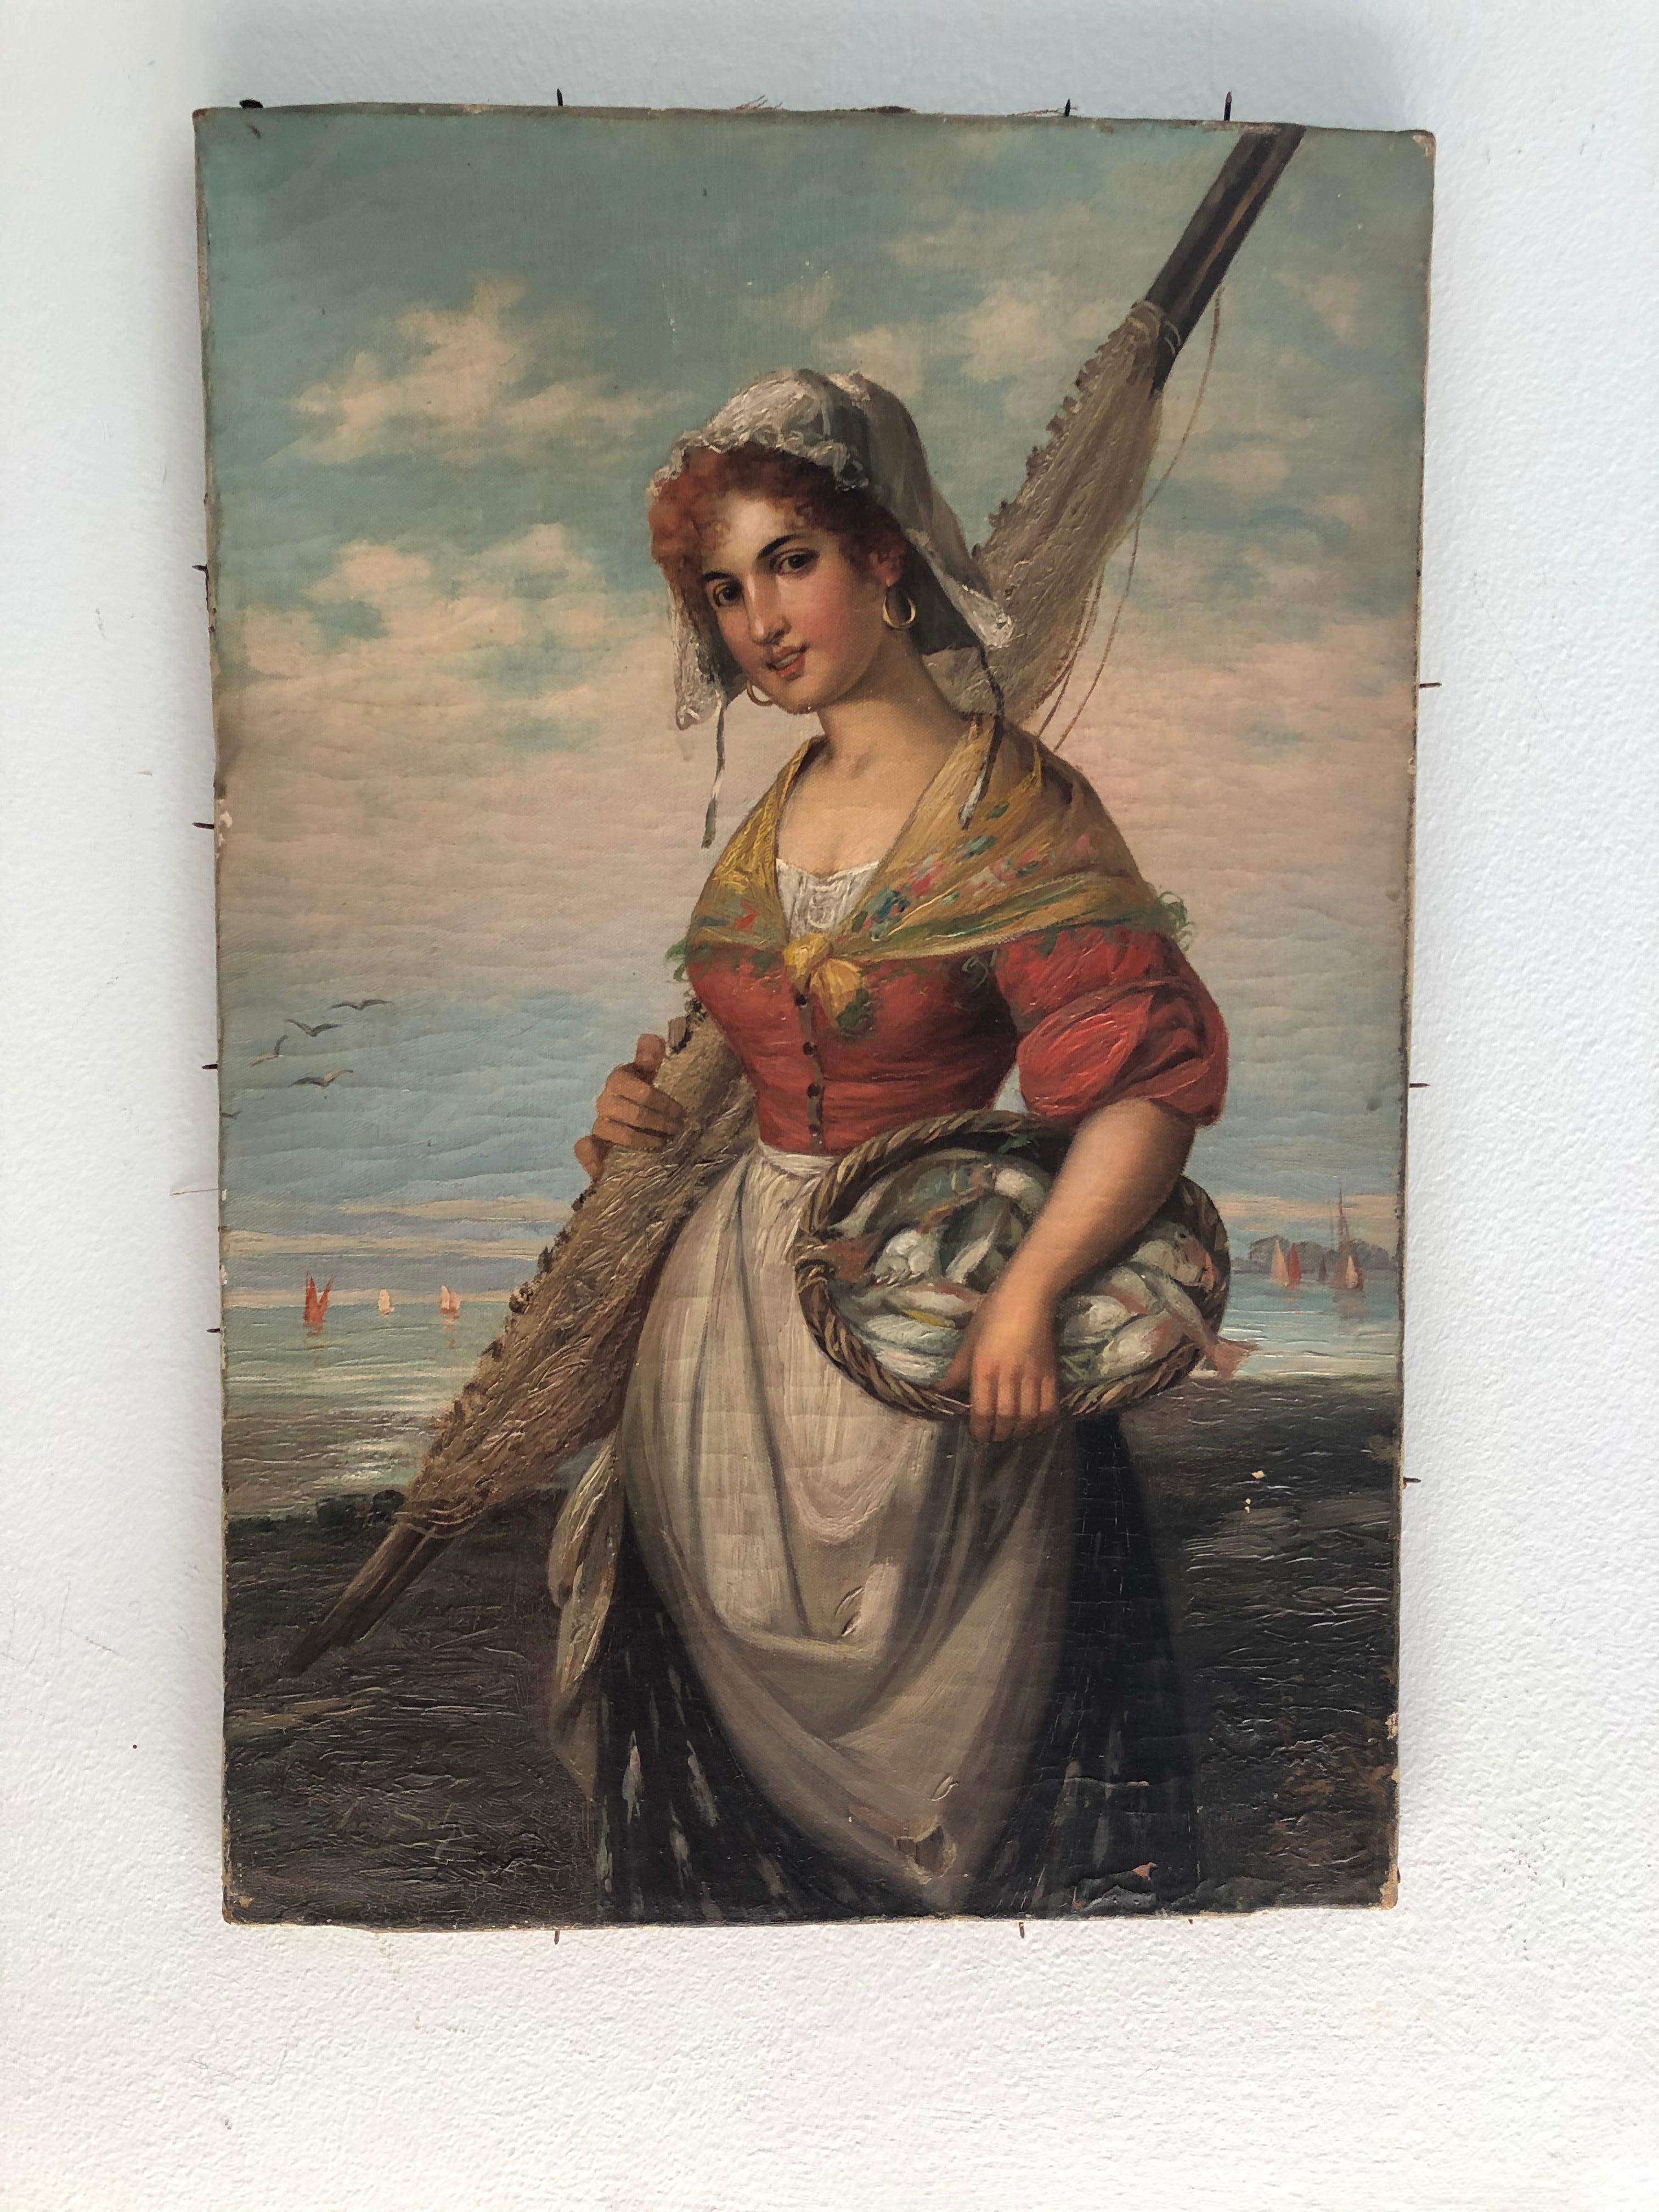 Joseph Wilhelm Suhs : 1864-1938. Artiste allemand listé avec des records d'enchères de plus de 4500 $. Cette huile sur toile représentant une charmante femme apportant la prise du jour mesure 18 3/4 pouces de haut sur 12 1/2 de large. Il n'est pas